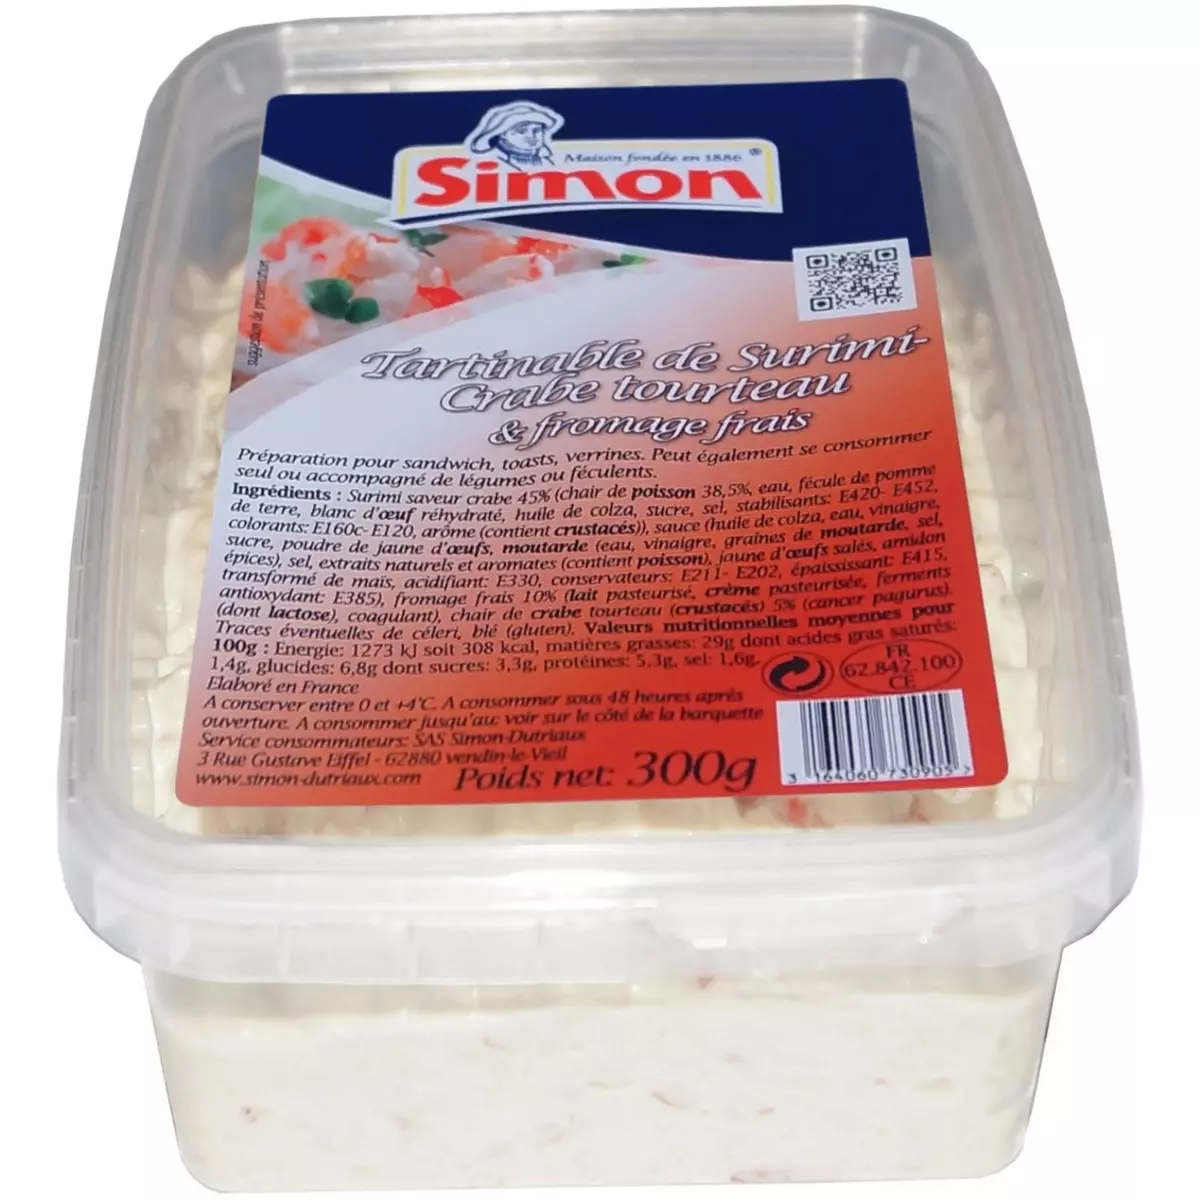 SIMON Tartinable de surimi crabe tourteau et fromage frais 300g